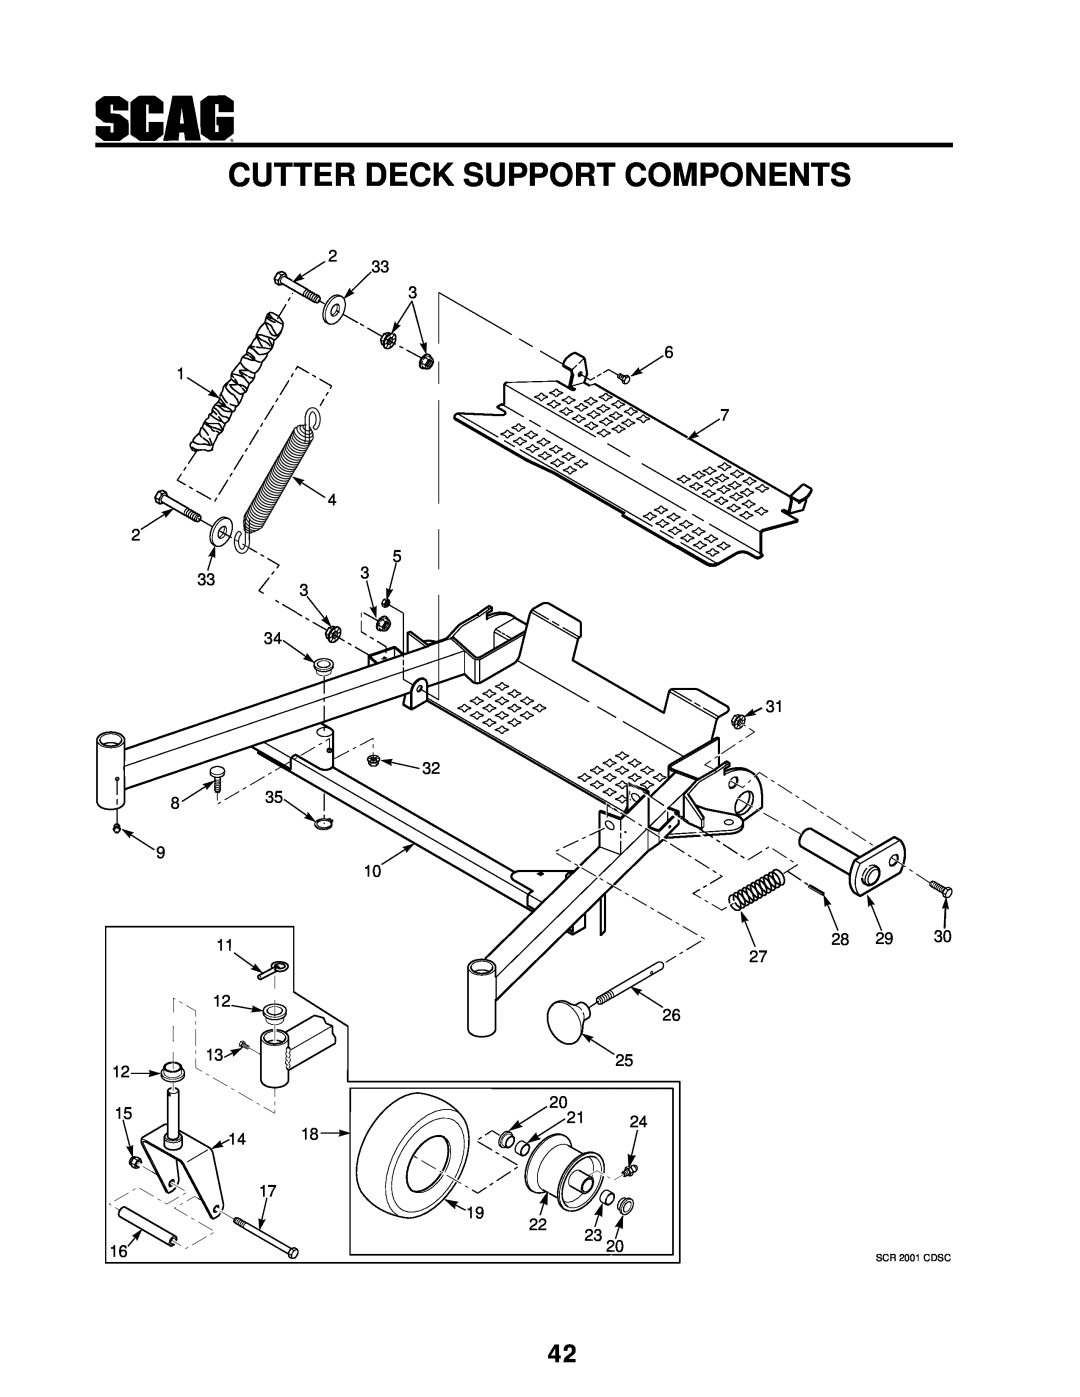 MB QUART manual Cutter Deck Support Components, 28 29 30, SCR 2001 CDSC 